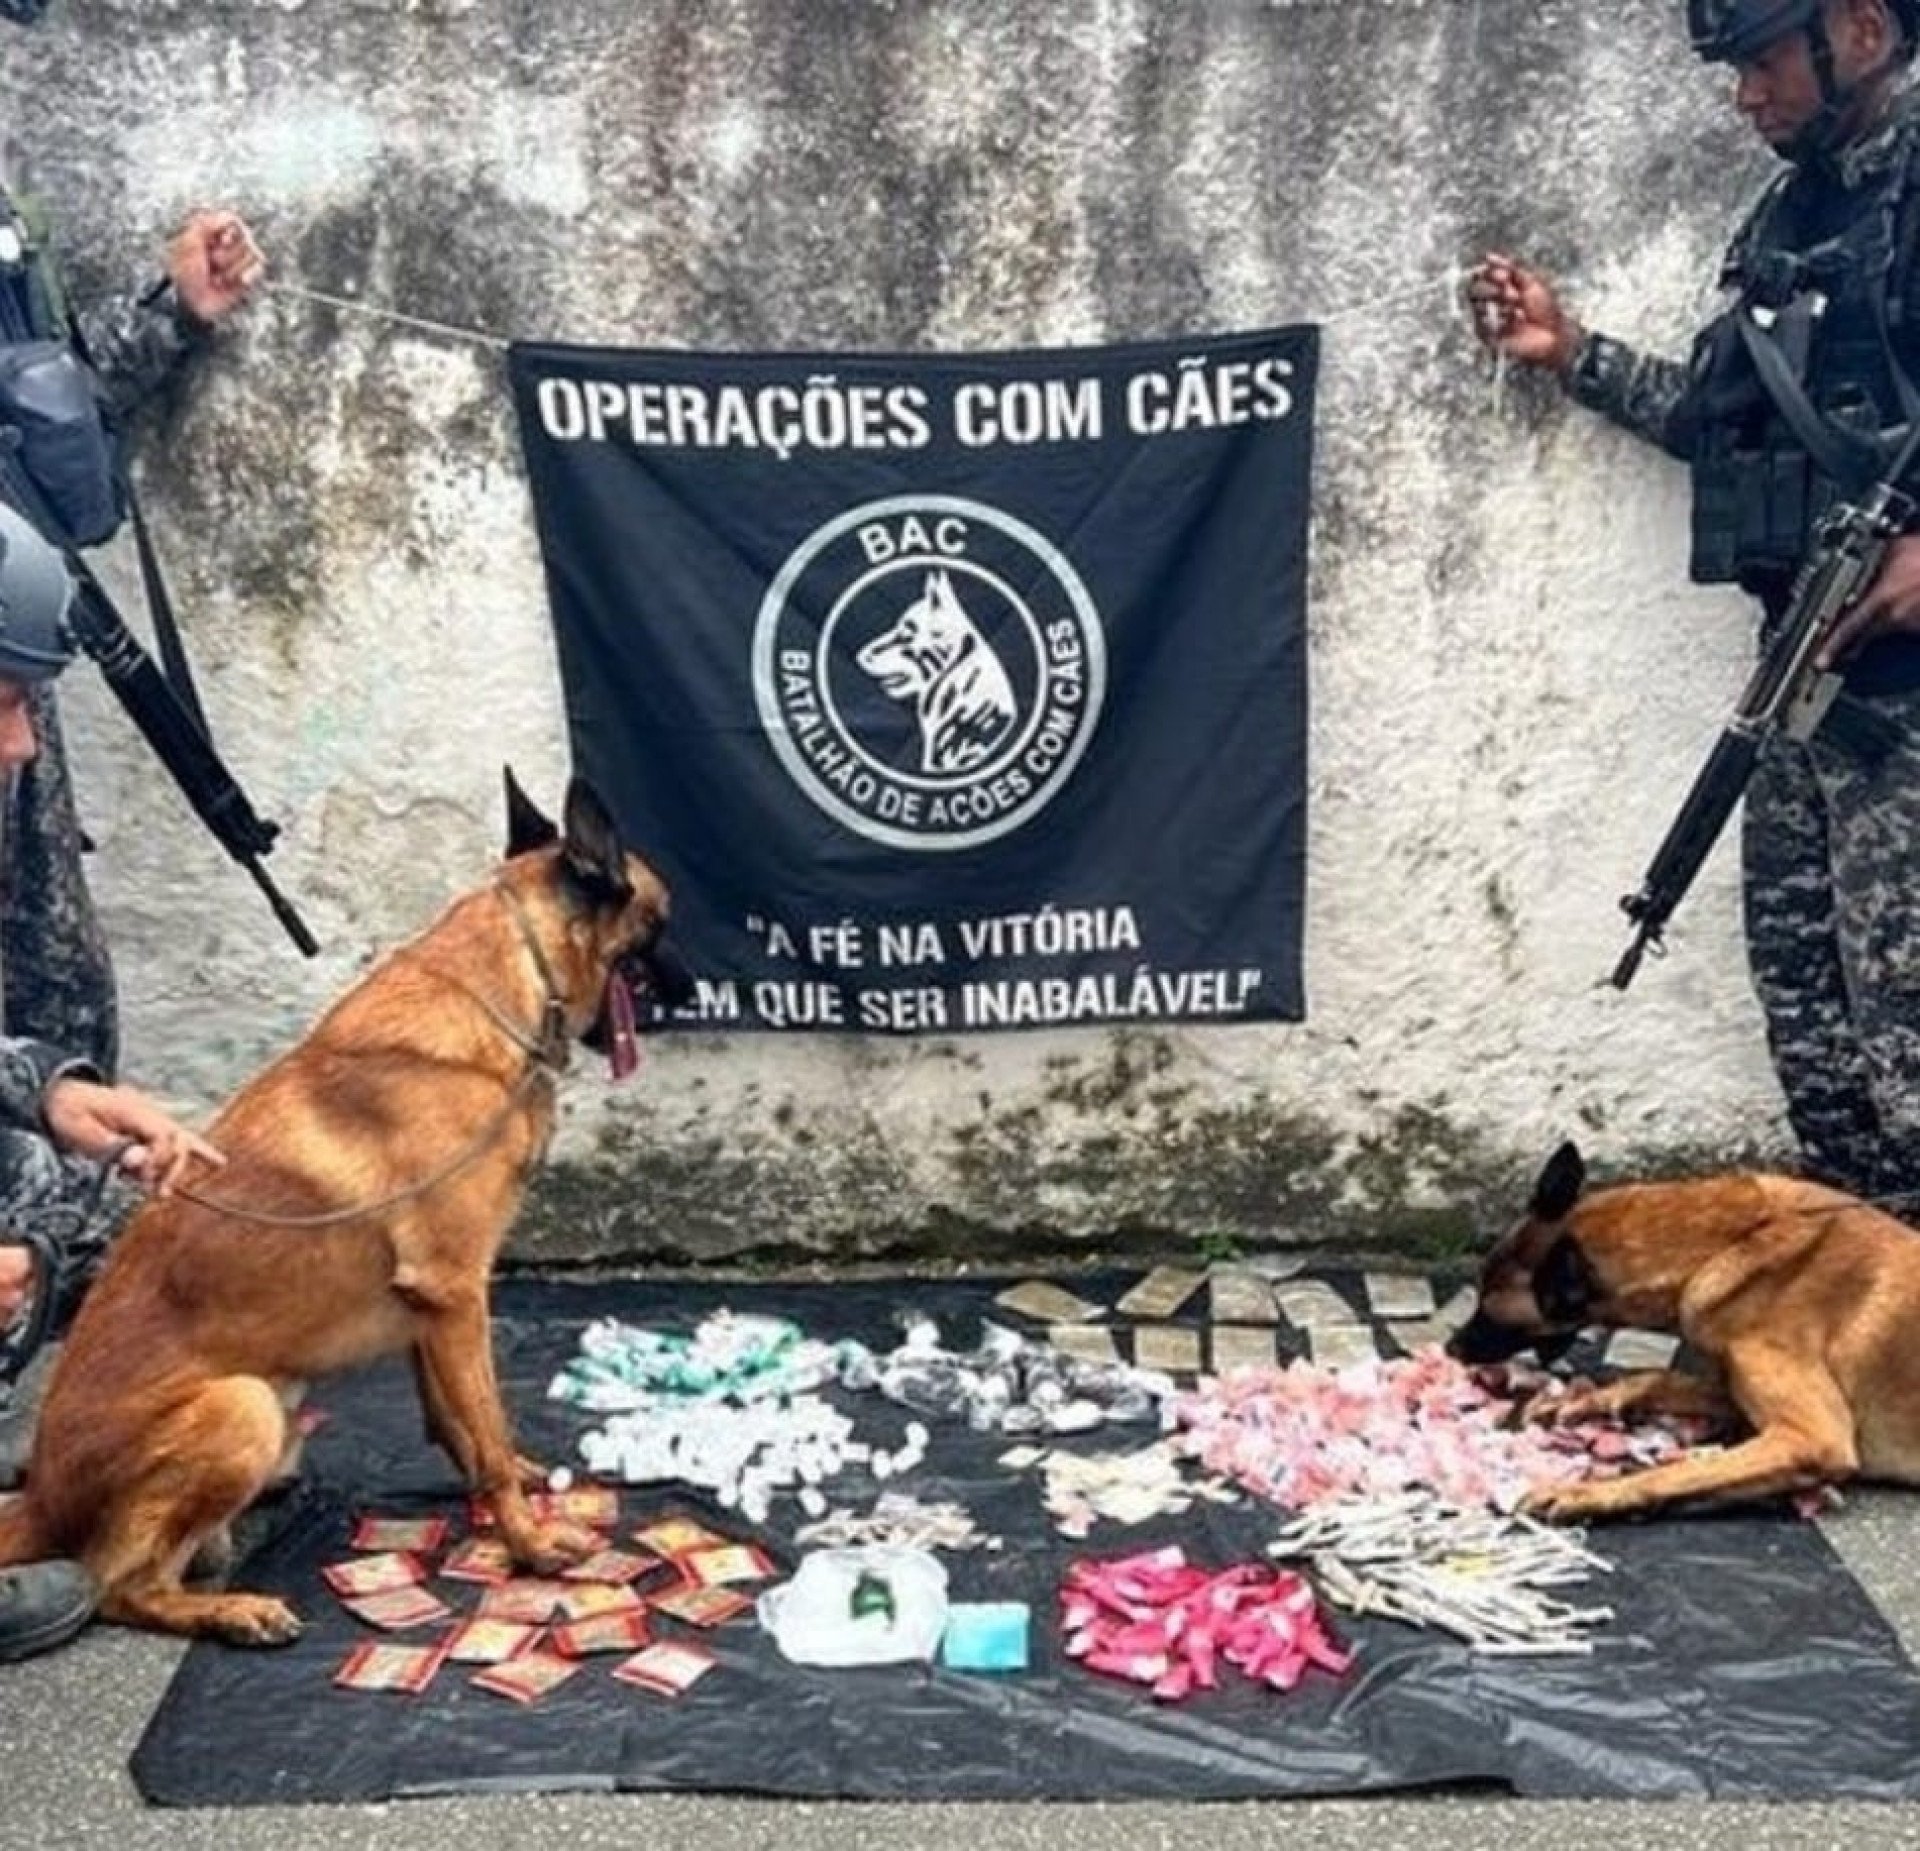 Drogas apreendidas no Morro da Glória 1. Traficantes fugiram para área de mata, ninguém foi preso - Divulgação/PM